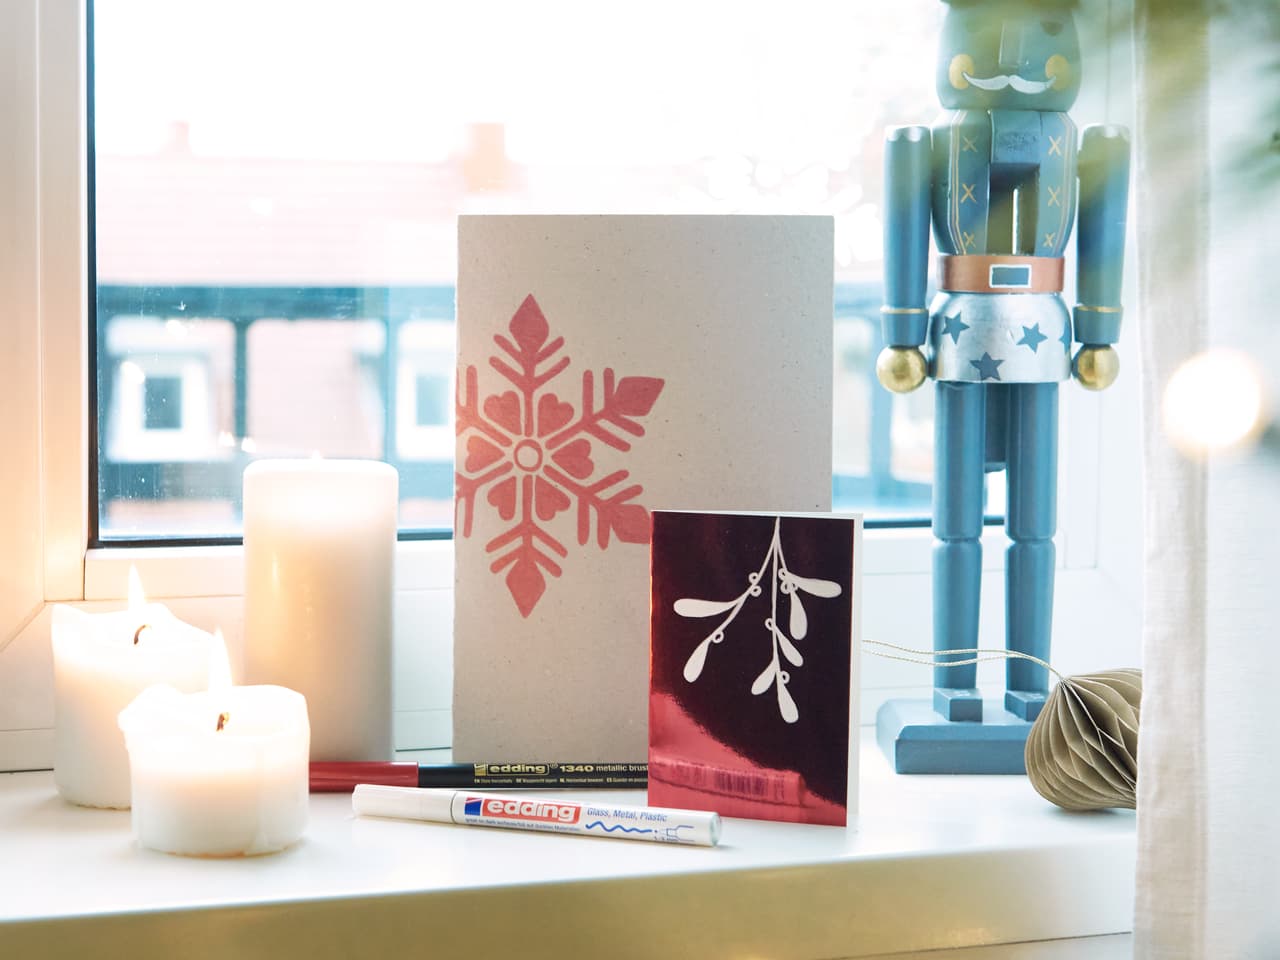 Ein gemütliches Festtags-Setup mit brennenden Kerzen, einer handgefertigten Grußkarte mit einem Schneeflocken-Design, erstellt mit hochwertiger wasserbasierter Tinte und edding 1340 metallic Pinselstift, Bastelmaterialien.